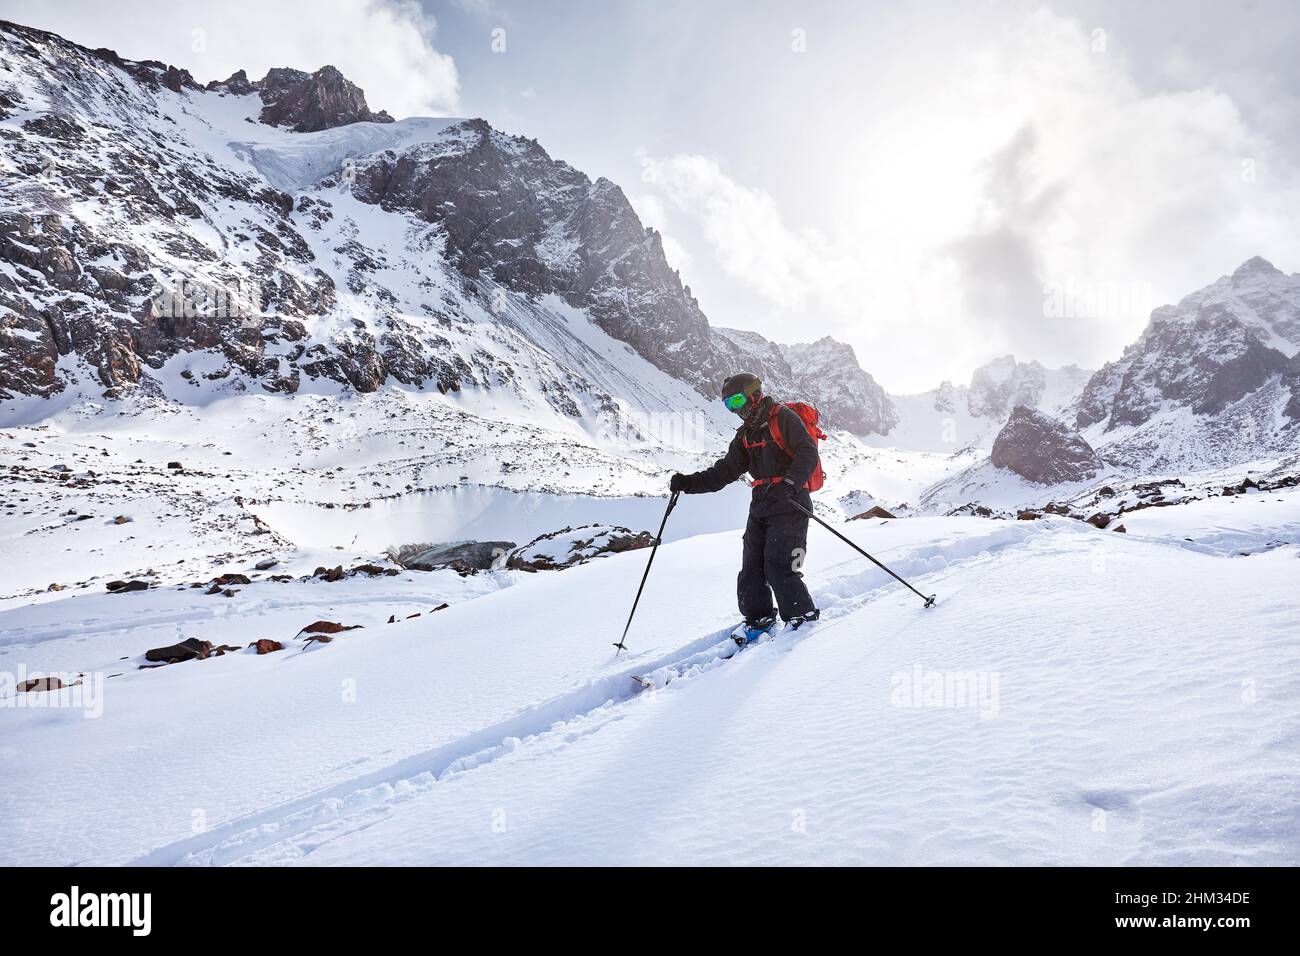 Skieur ski alpin avec sac à dos rouge dans un casque et un masque dans des montagnes enneigées. Sport en plein air en hiver Banque D'Images